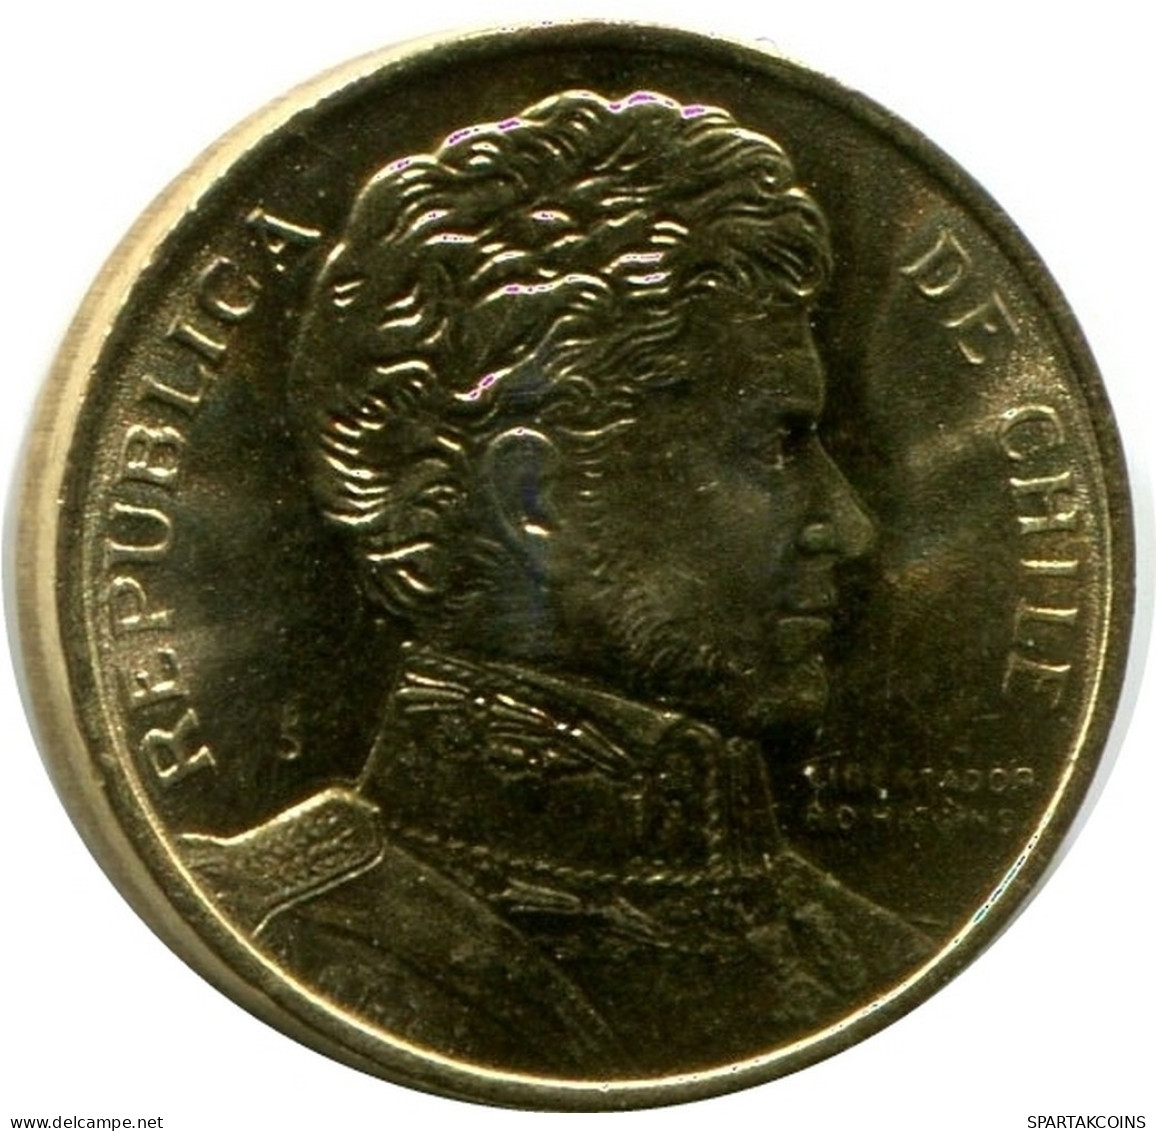 1 PESO 1990 CHILE UNC Coin #M10076.U.A - Chili